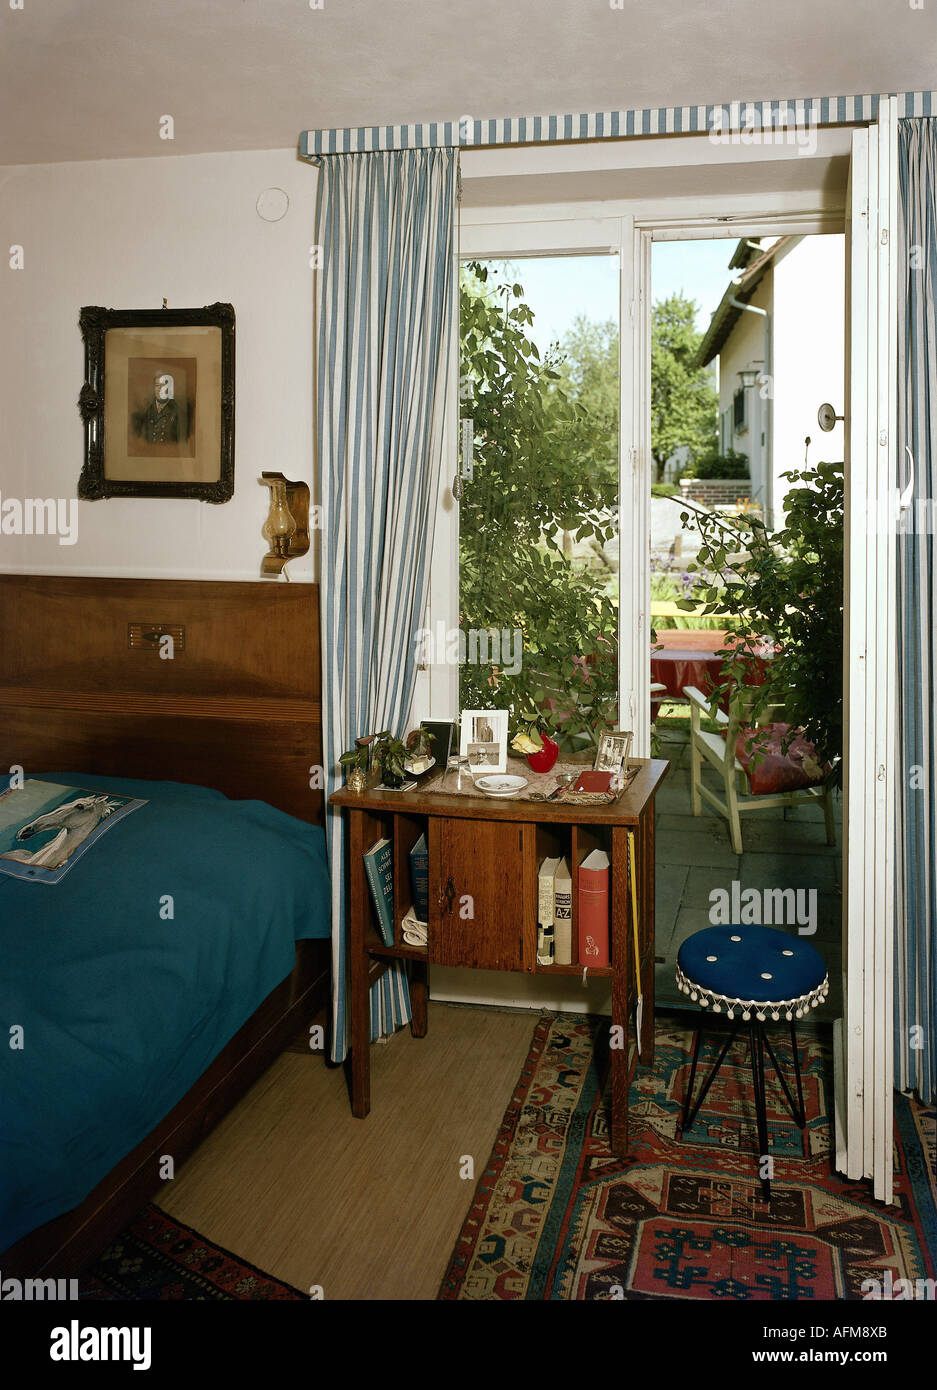 ameublement, chambre à coucher, années 60 Photo Stock - Alamy